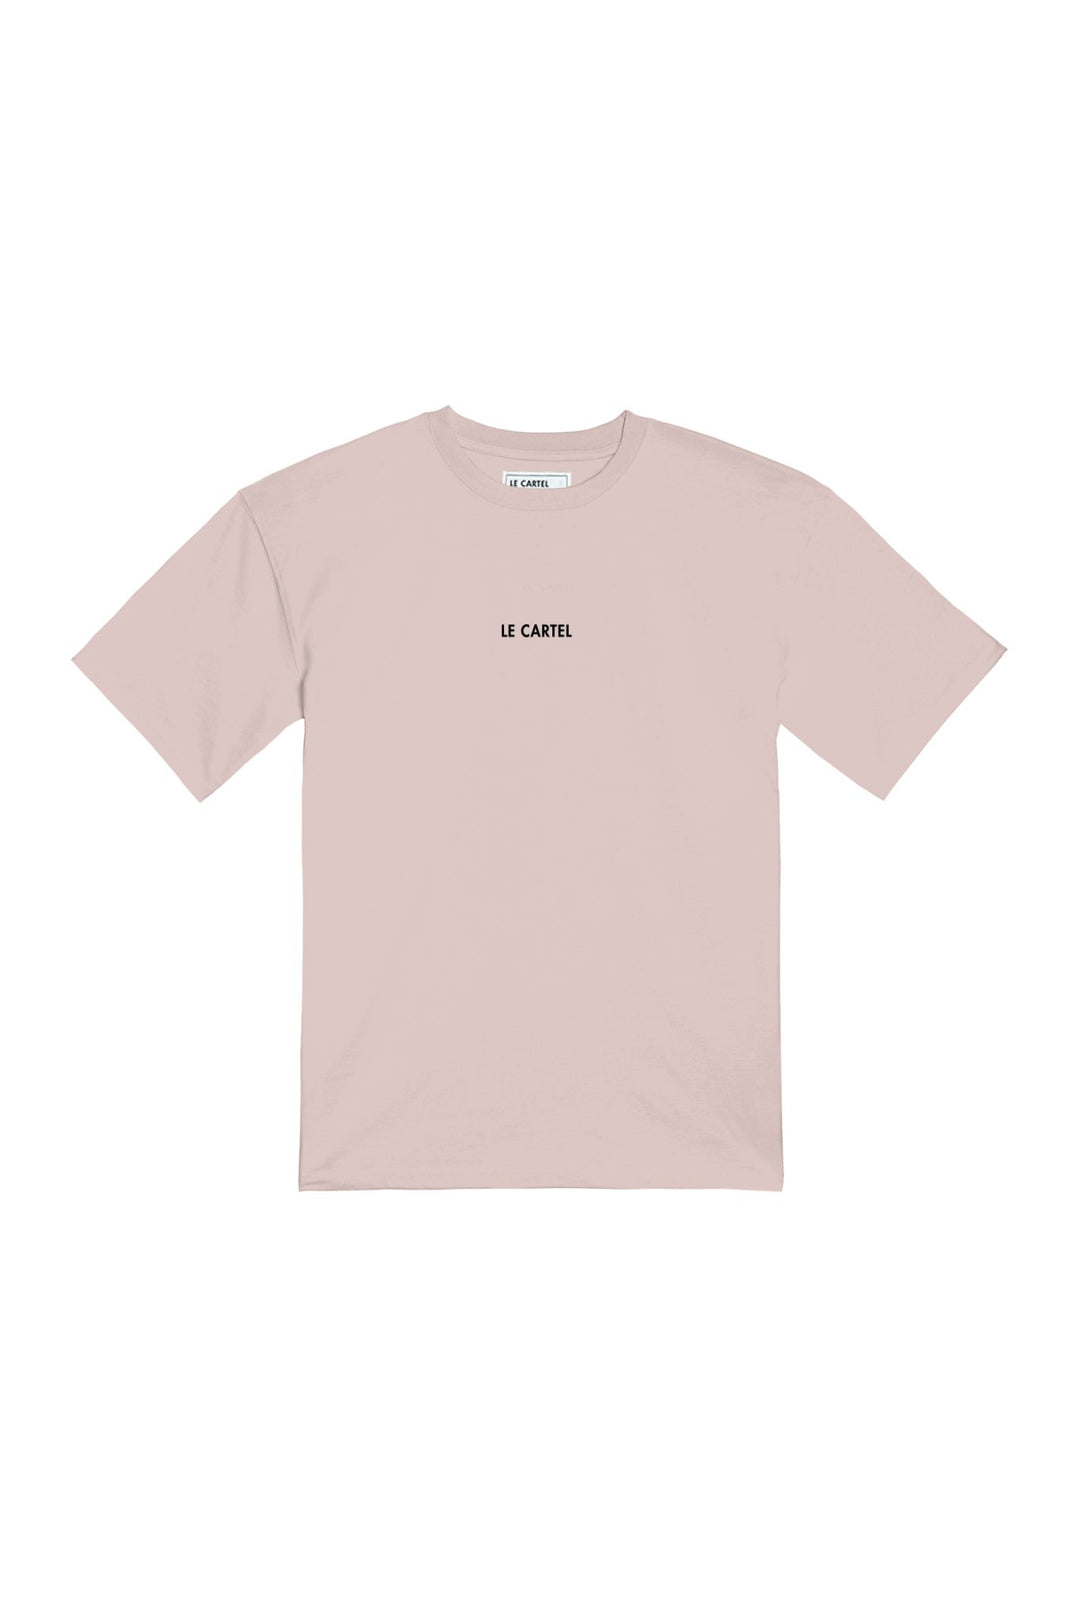 FORTUNE CROISSANT・T-shirt unisexe・Rose poudré - Le Cartel